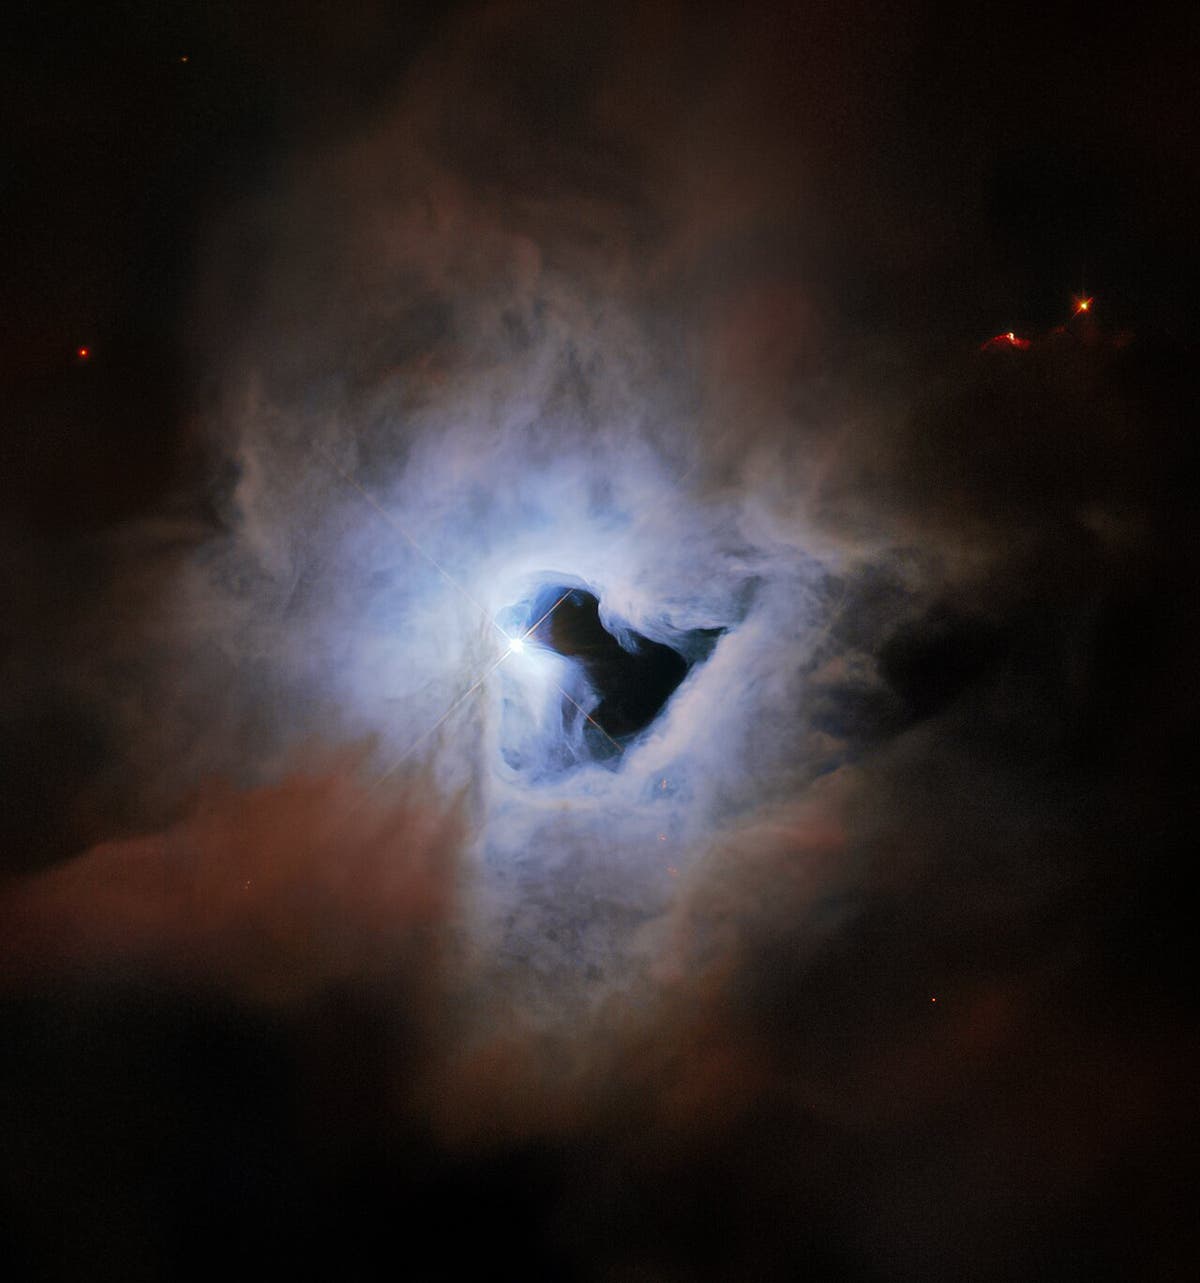 Gambar baru dari teleskop Hubble menunjukkan “lubang kunci” kosmik raksasa di kegelapan ruang angkasa